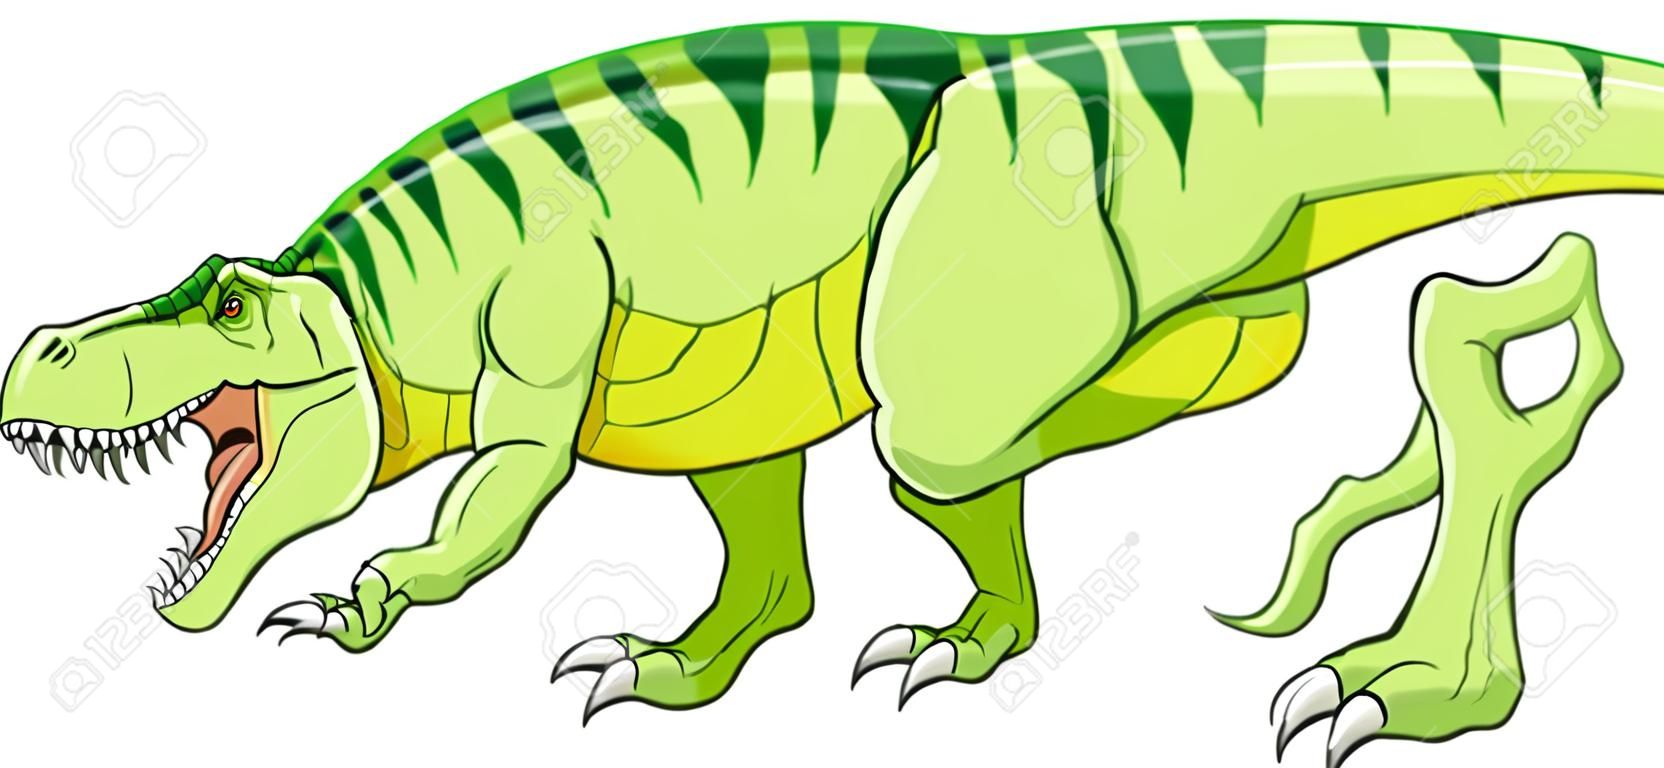 Dinosauro t-rex verde cartone animato che ringhia